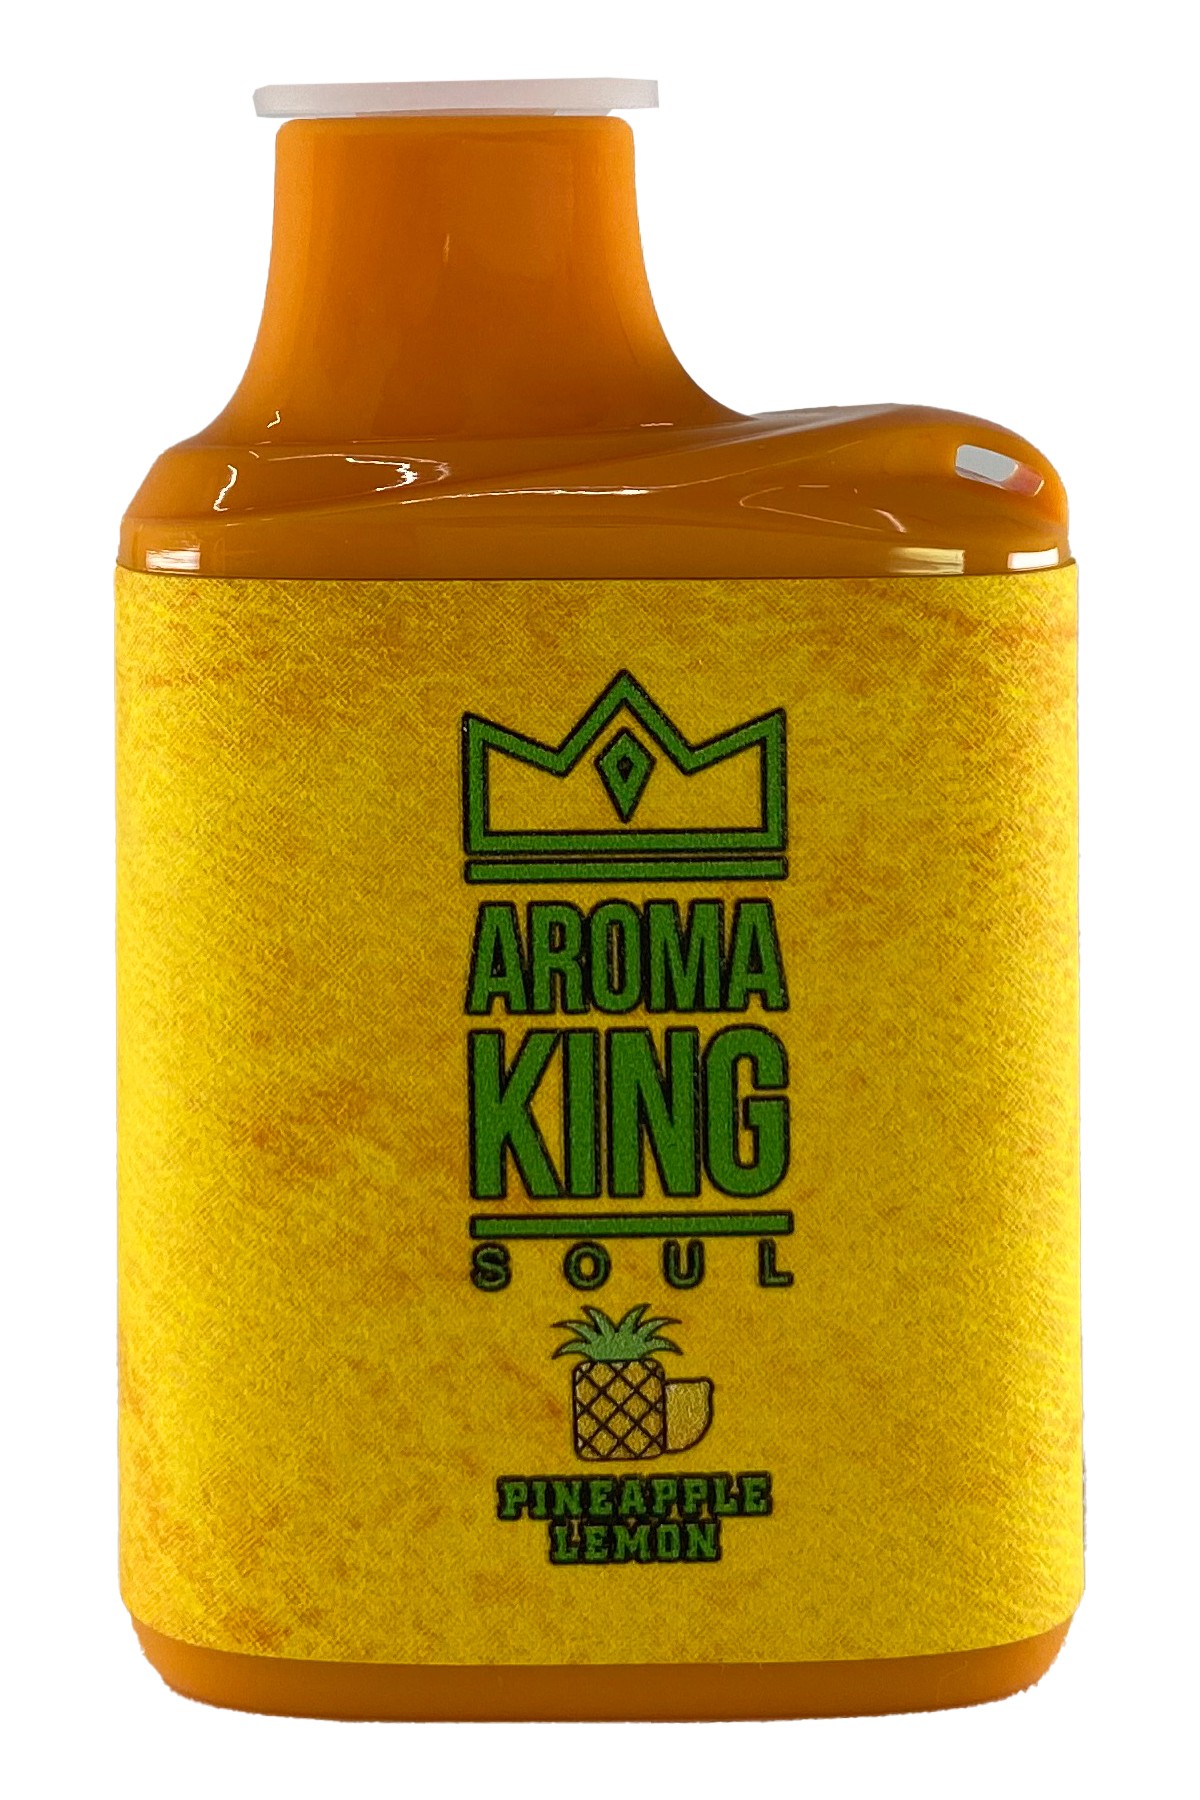 Aroma King 3000 Soul